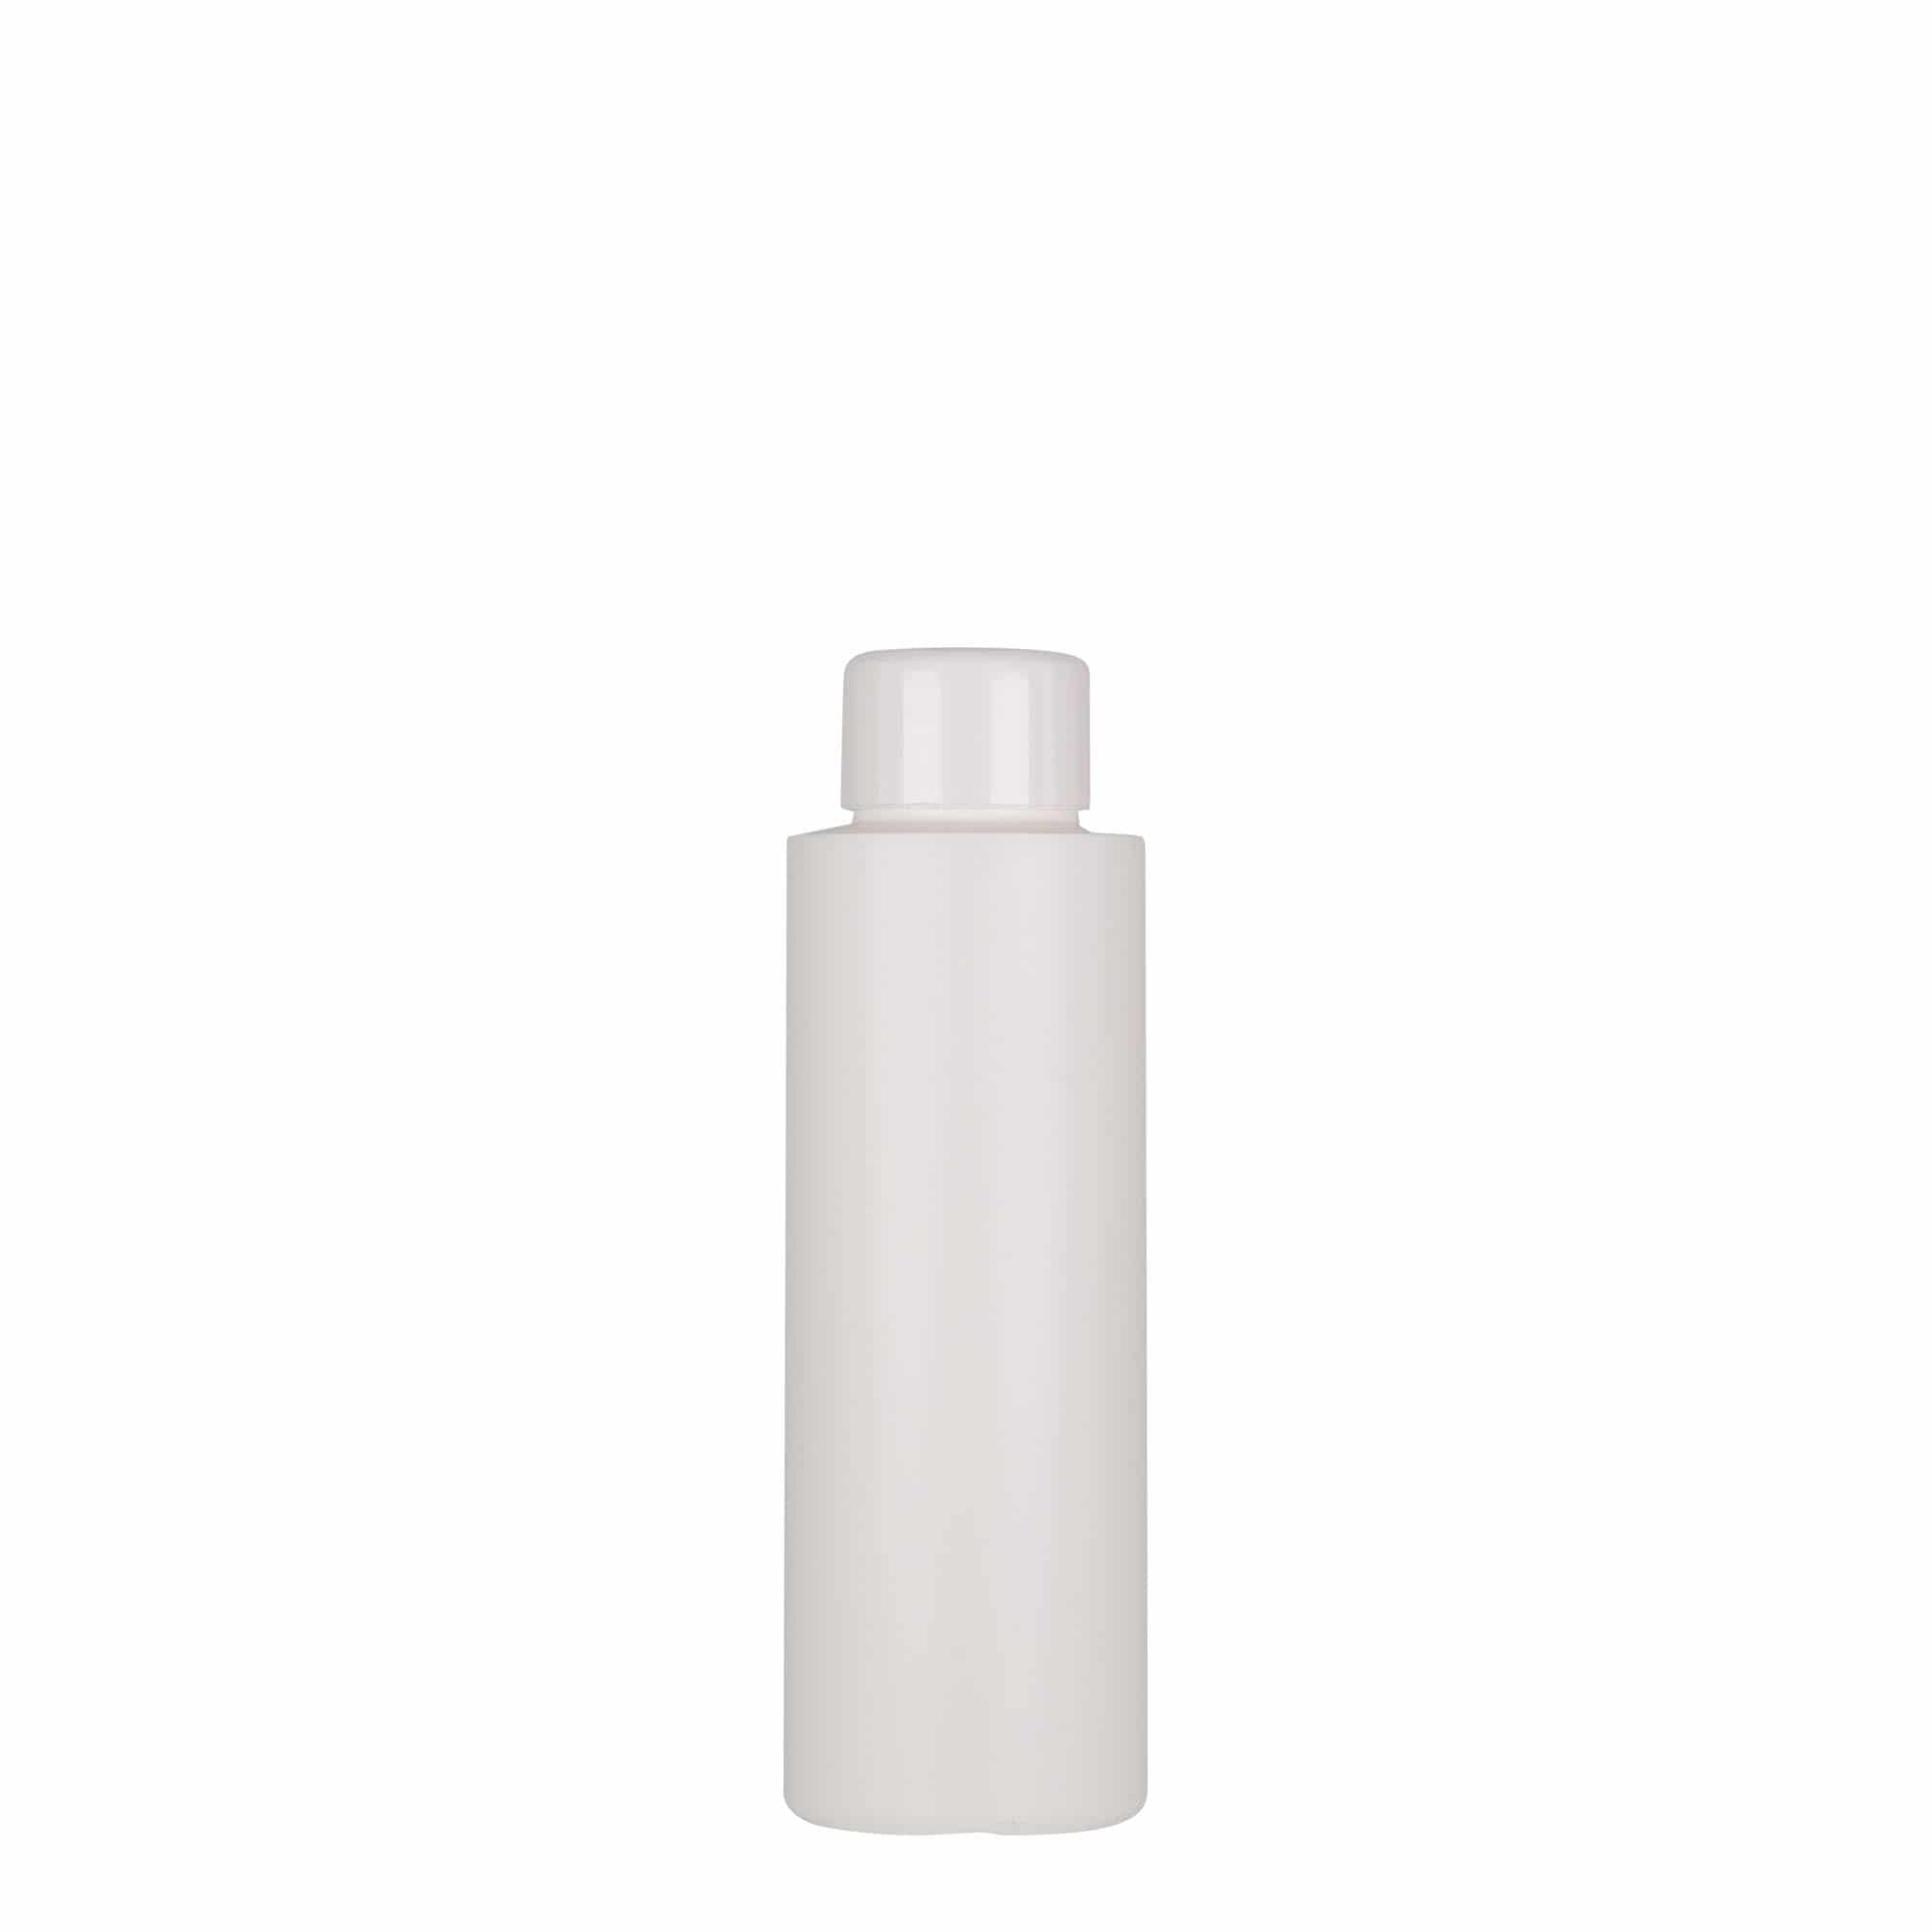 100 ml butelka z tworzywa sztucznego 'Pipe', Green HDPE, kolor biały, zamknięcie: GPI 24/410